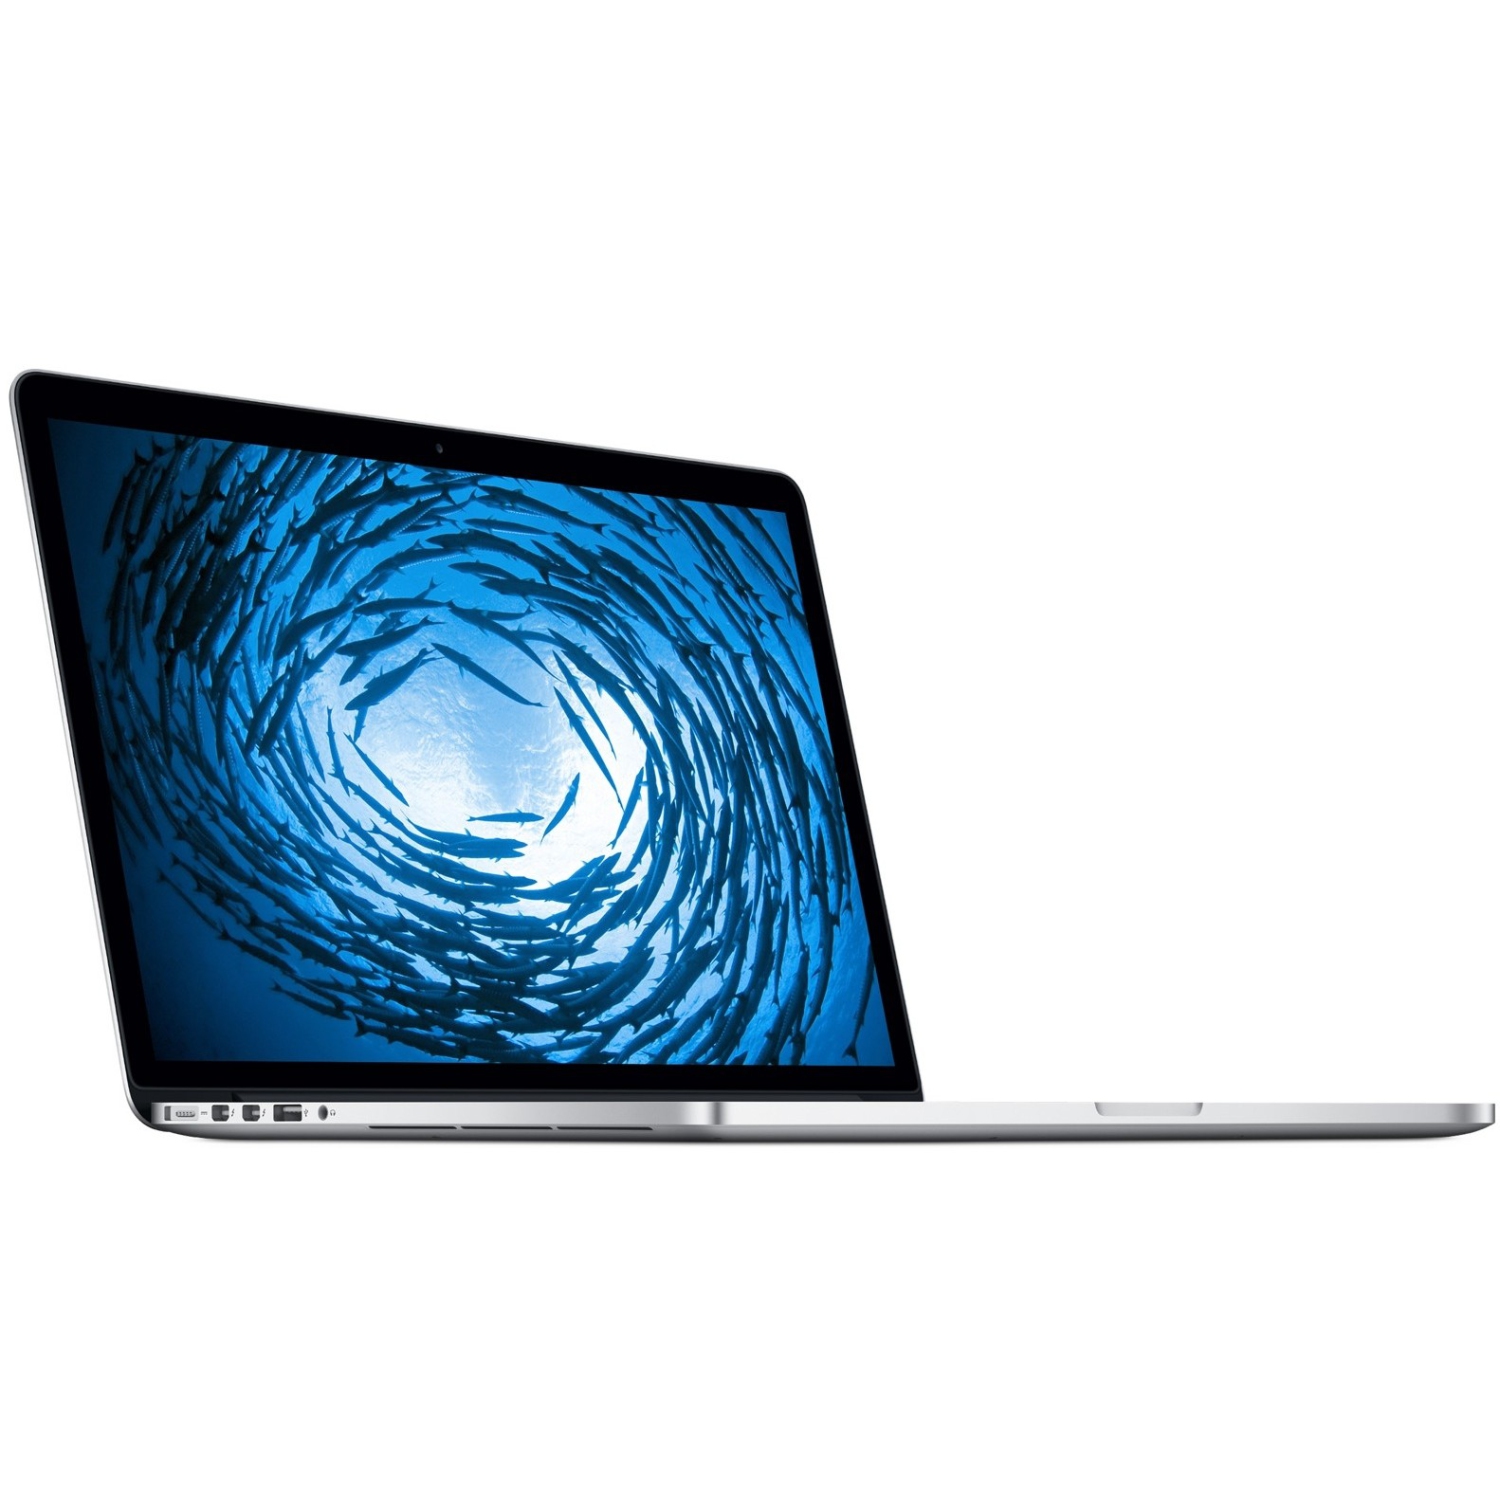 2015 apple macbook pro ssd model